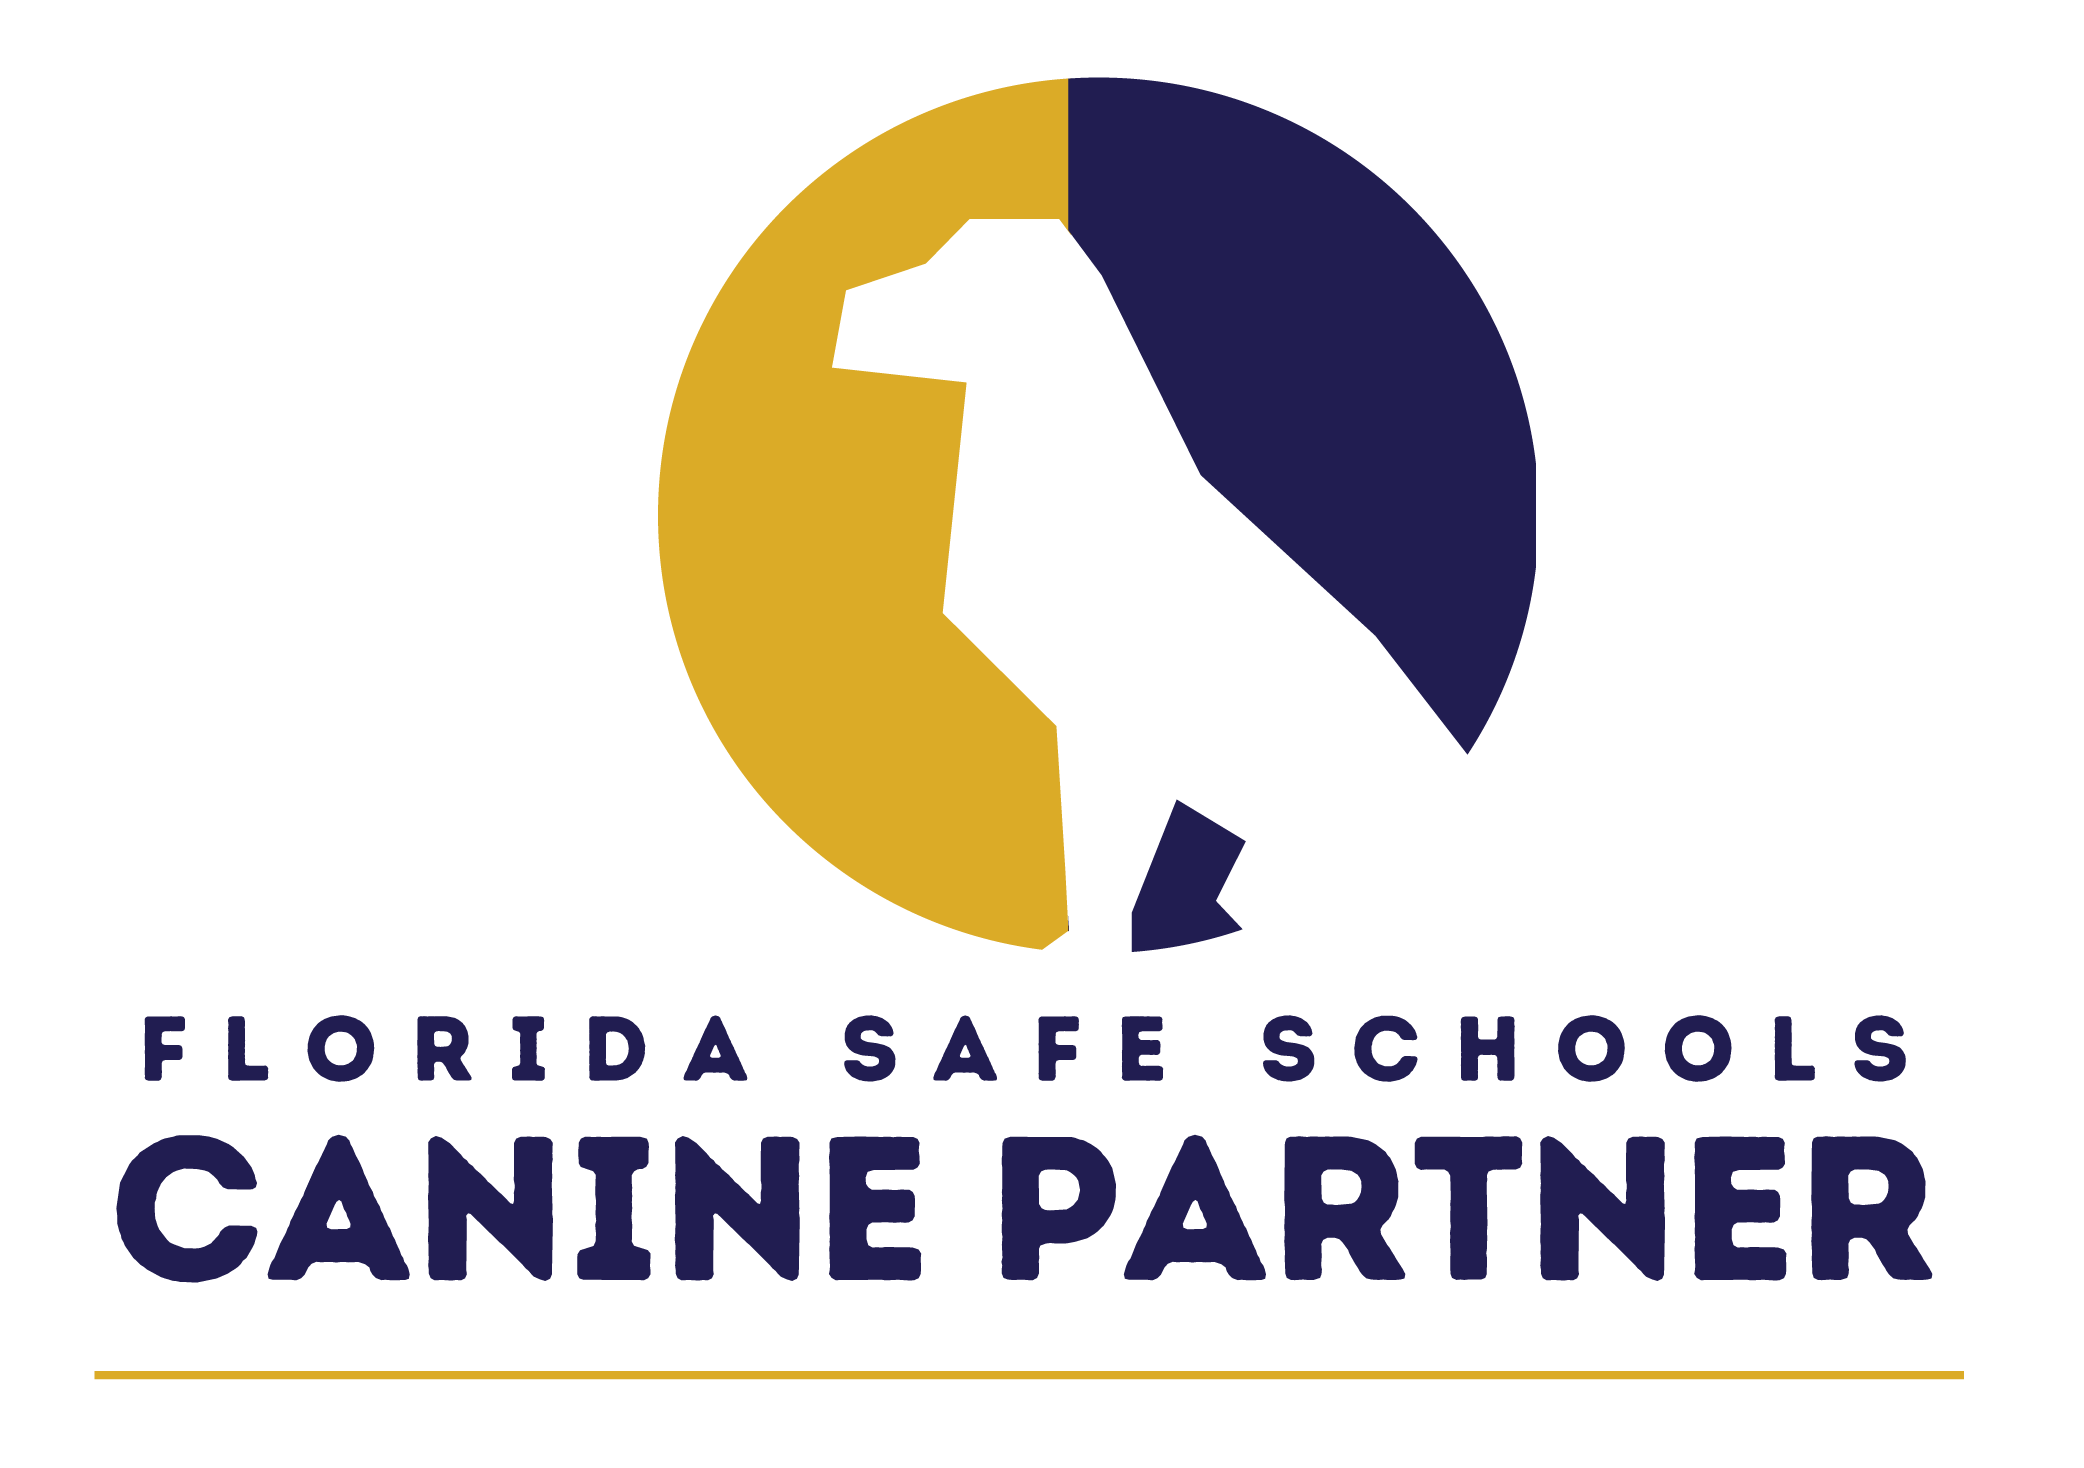 Florida Safe Schools Canine Partner